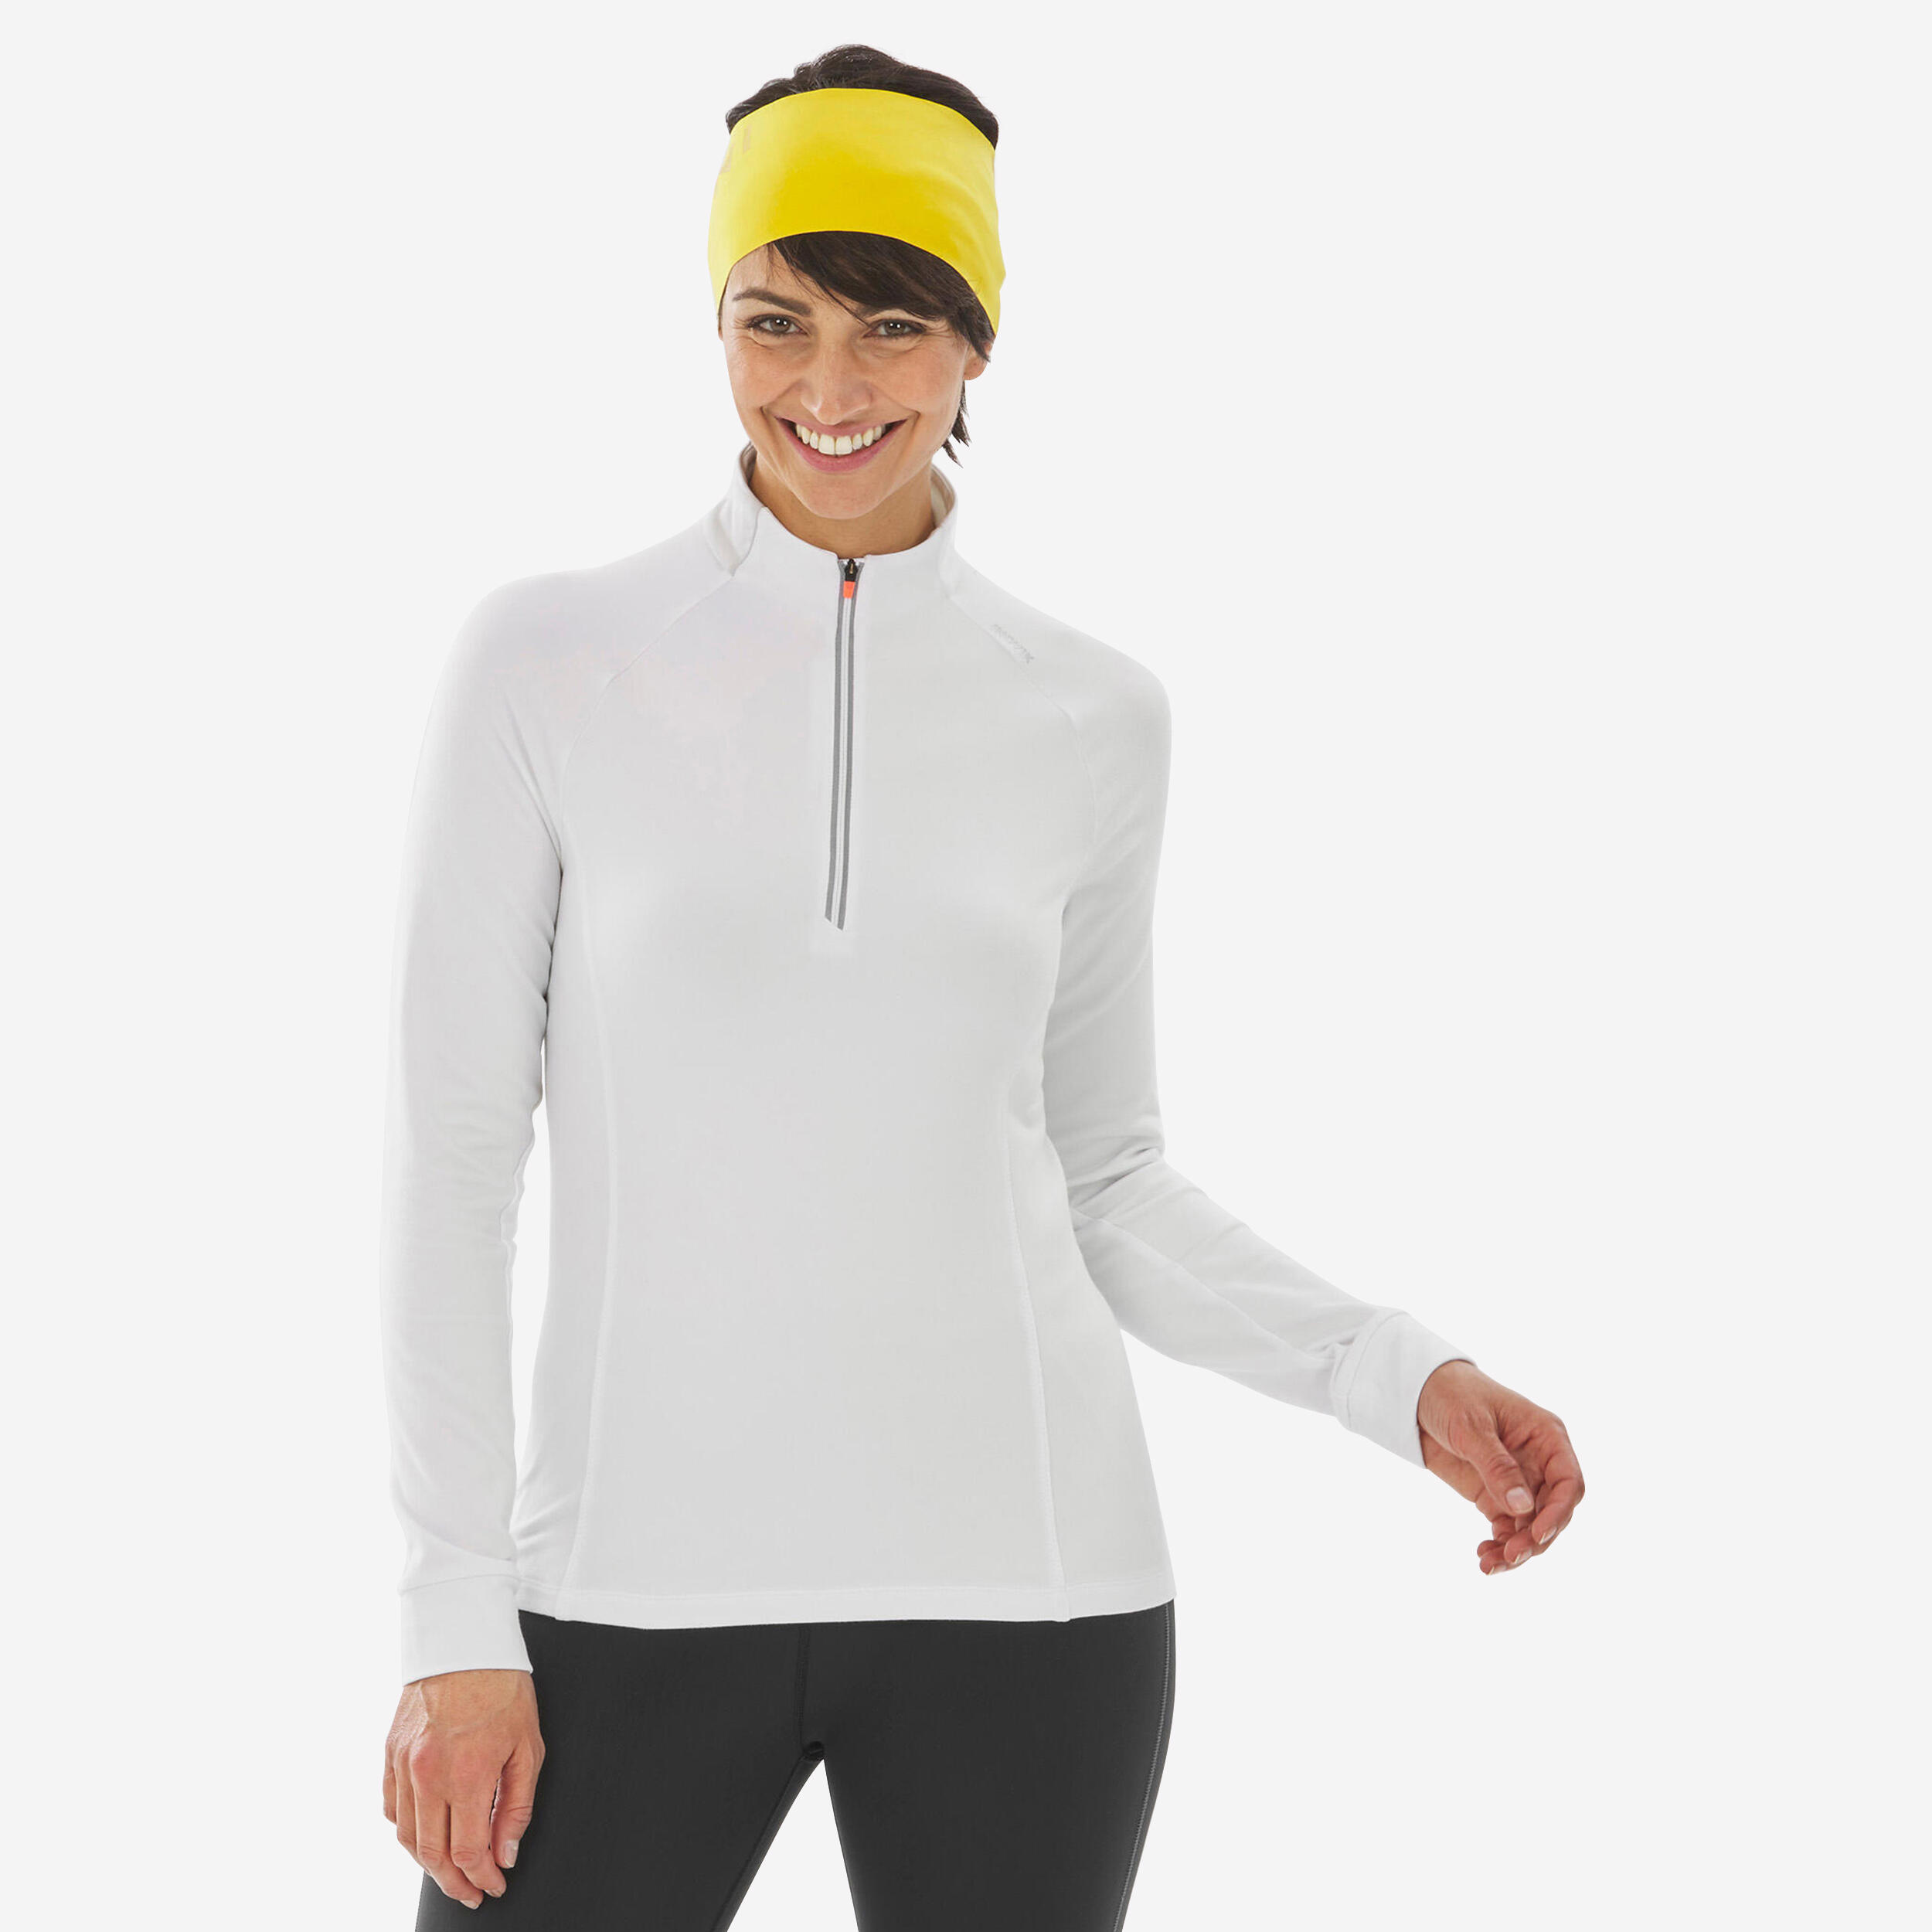 Image of Women’s Cross-Country Skiing Shirt - 100 White